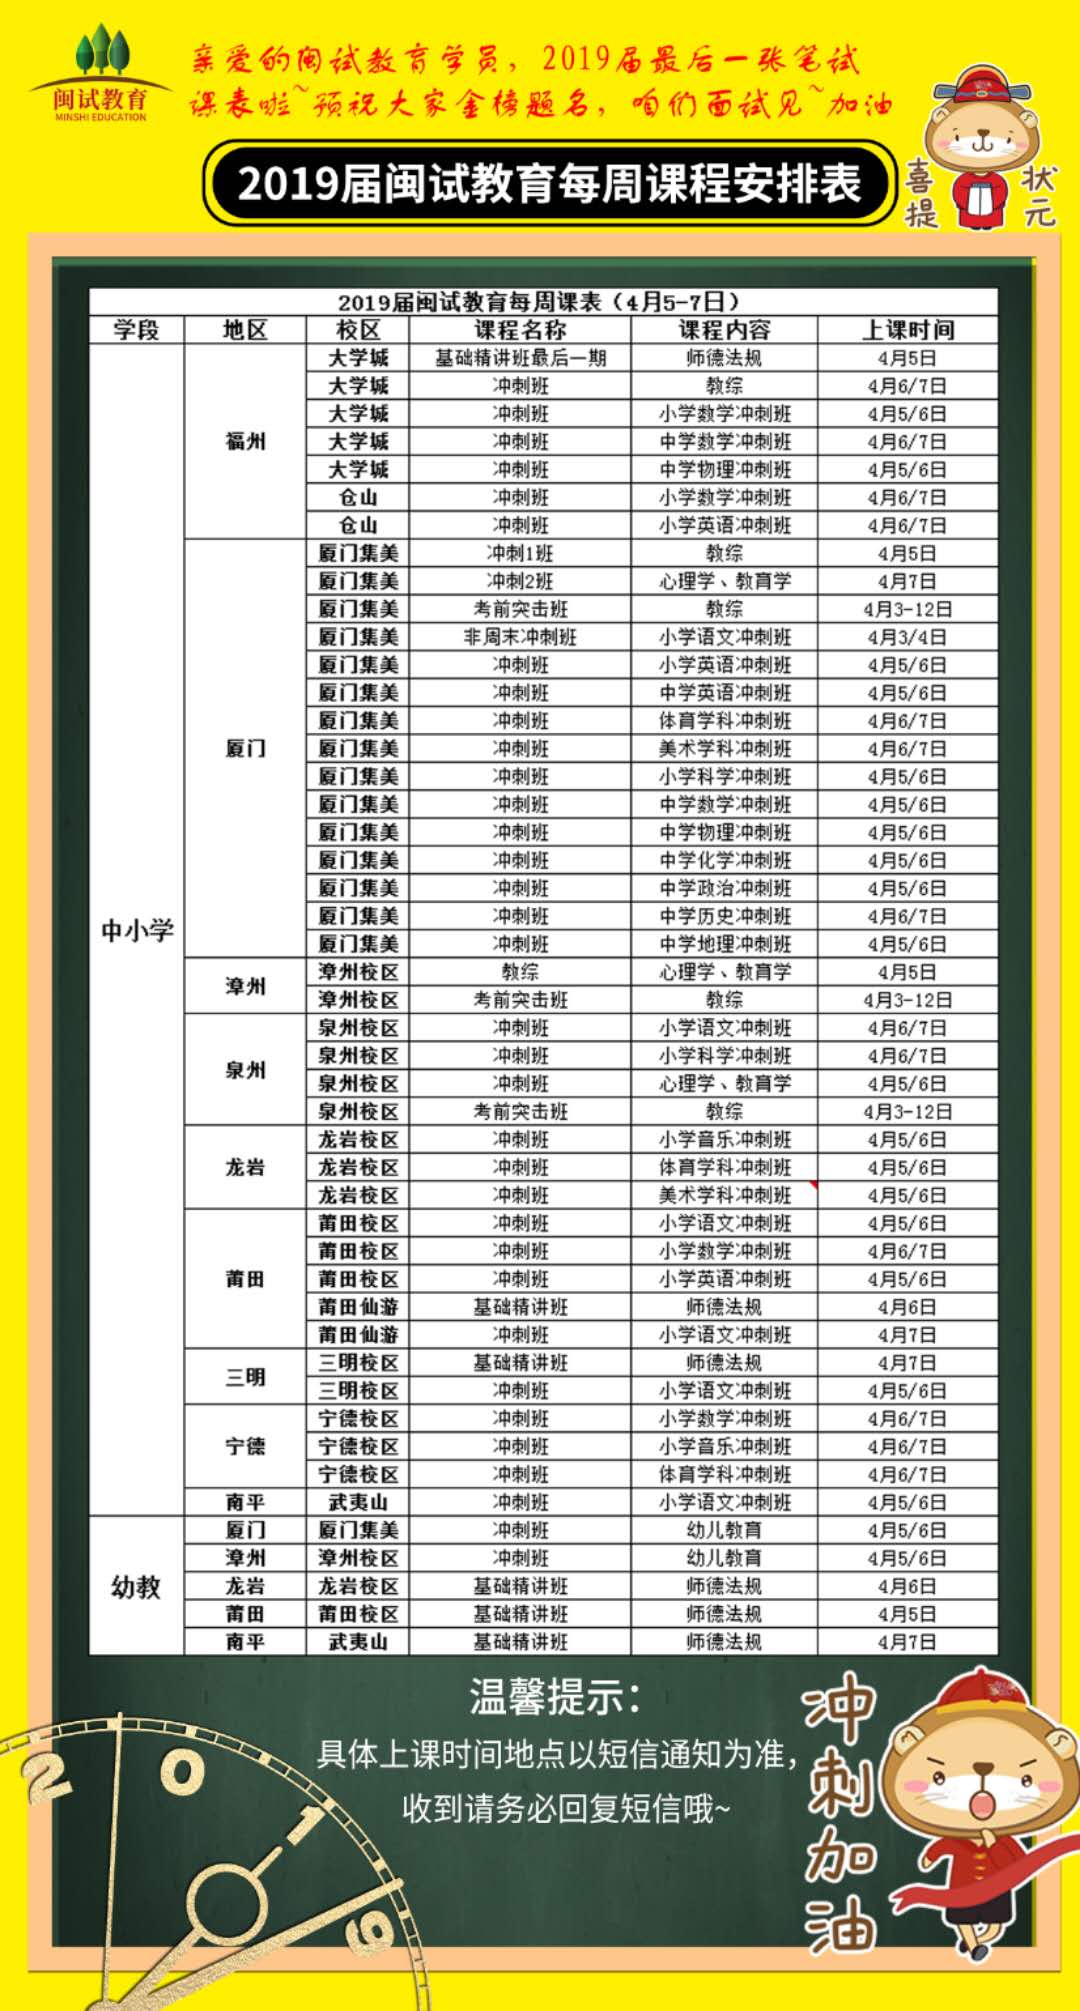 【开课通知】2019届闽试教育4月第一周课程安排表